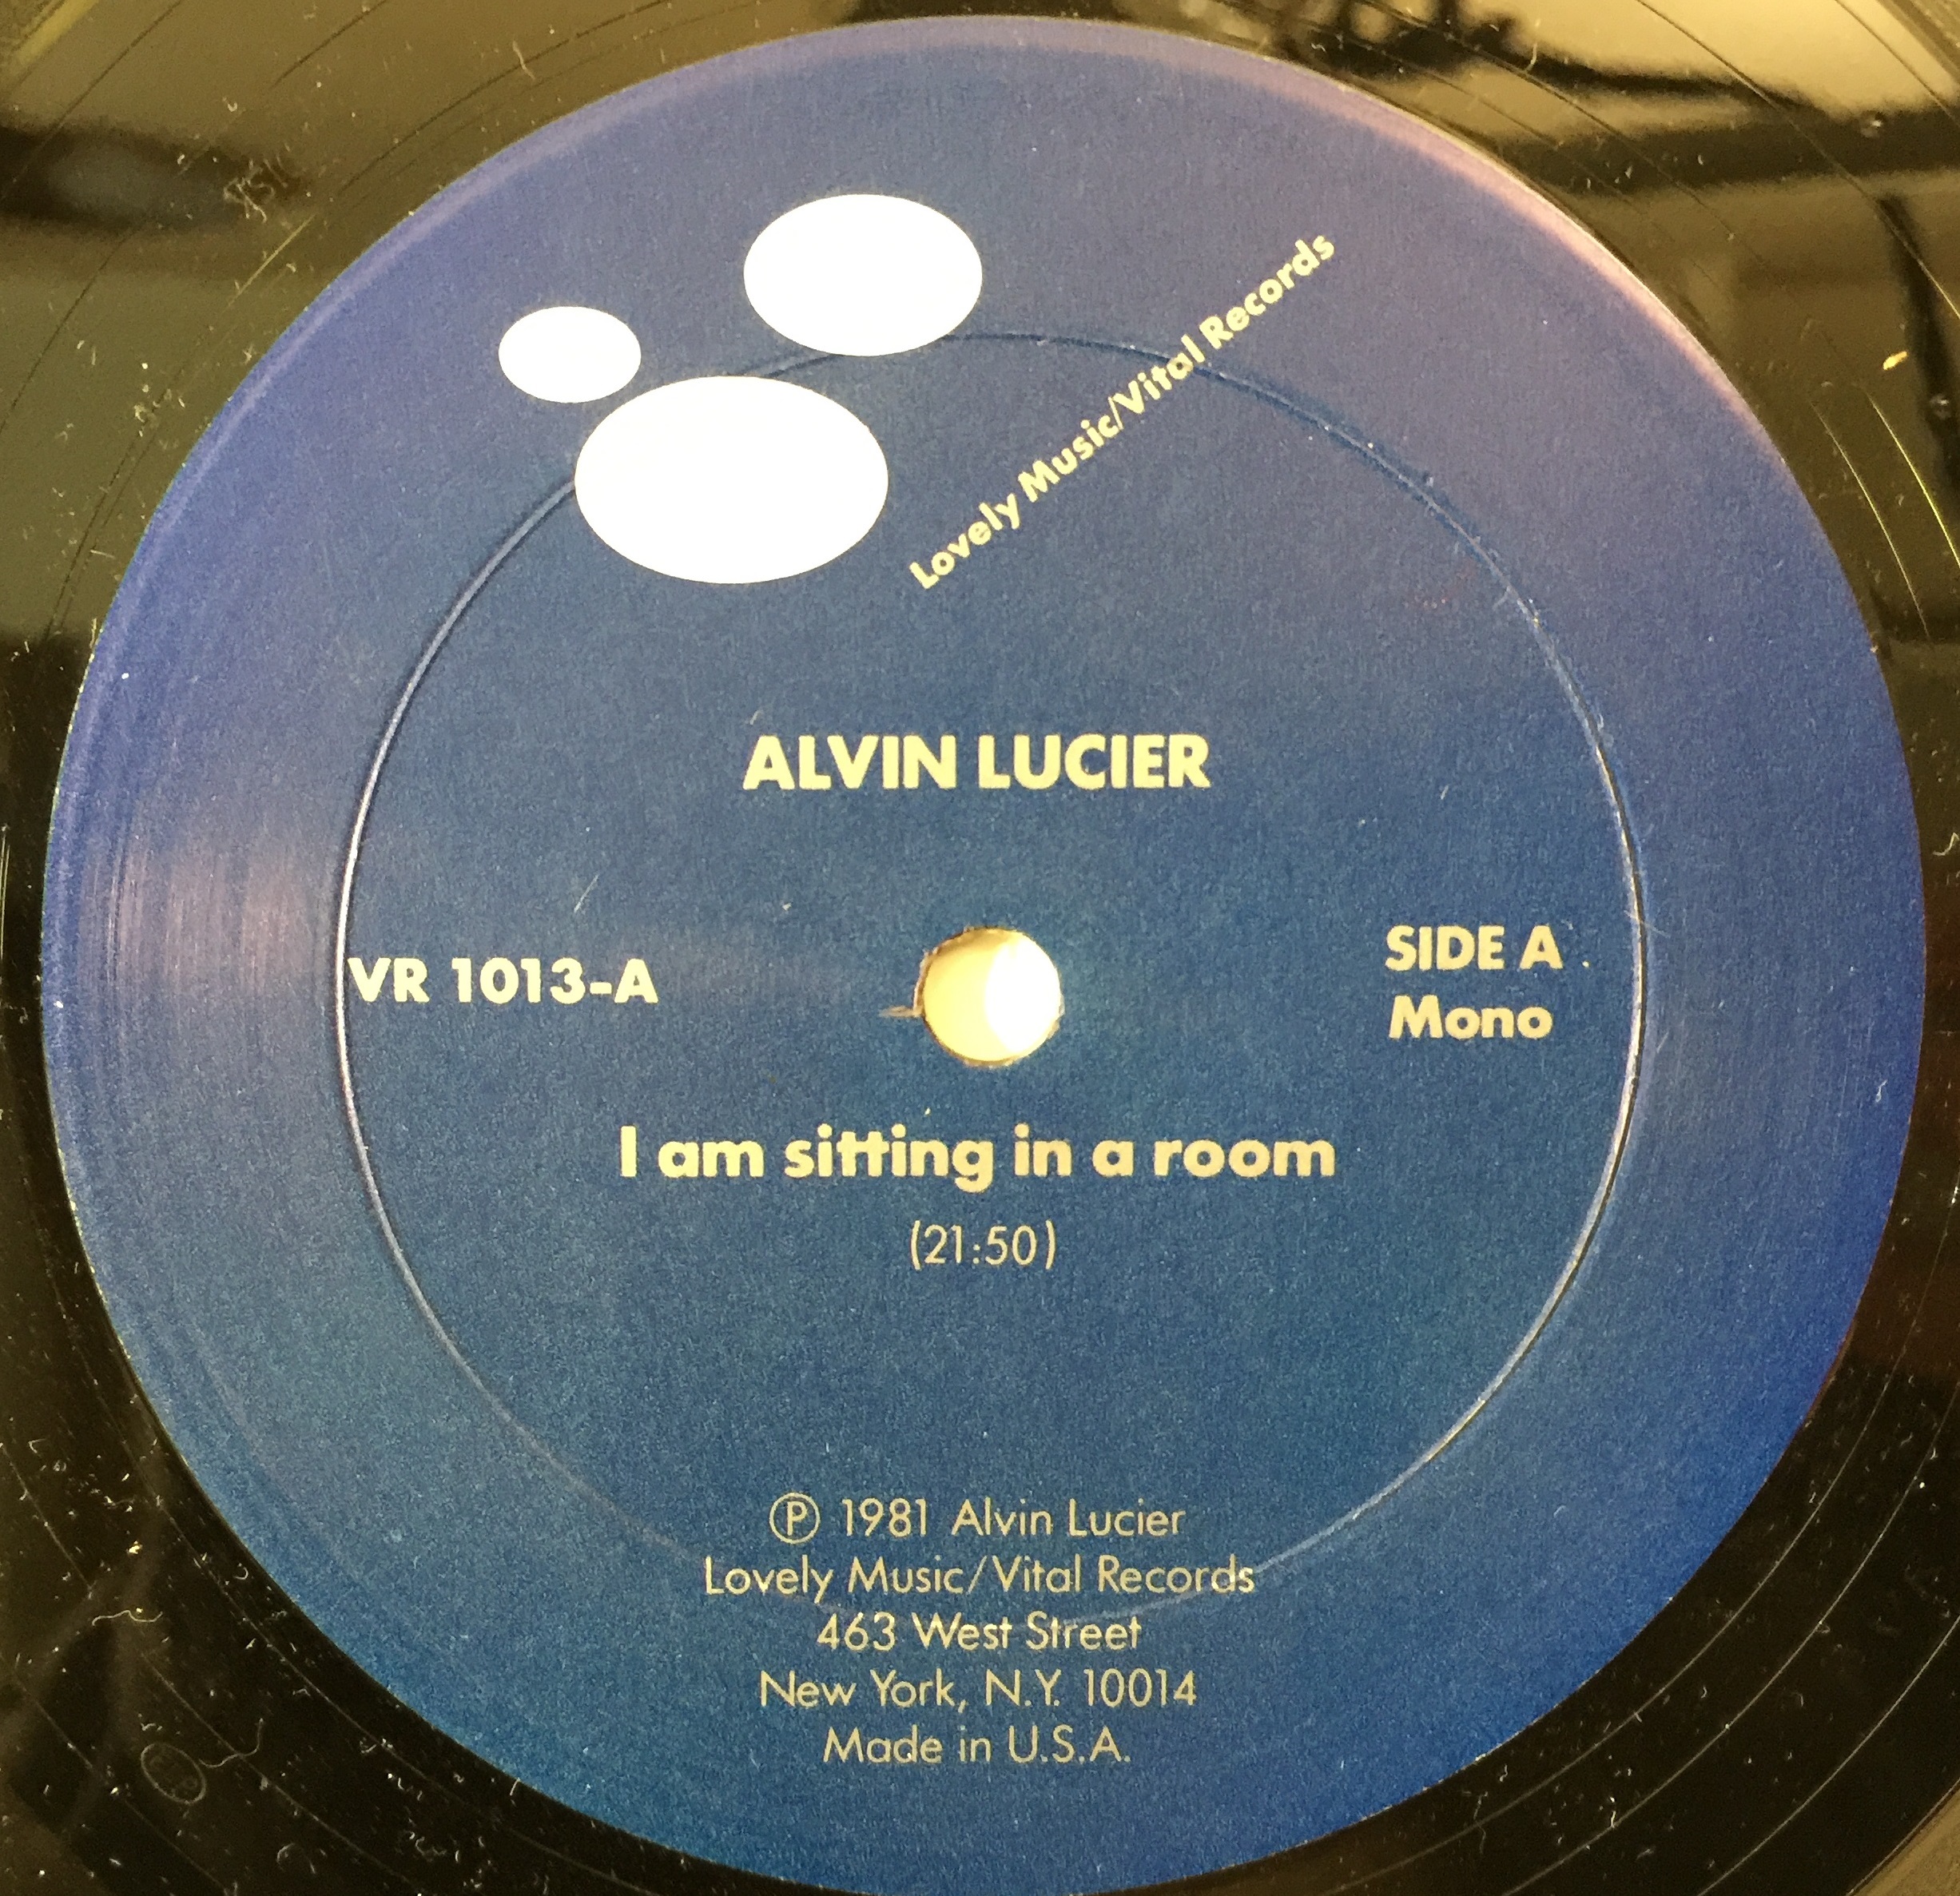 卓抜 ALVIN LUCIER オリジナルレコード drenriquejmariani.com